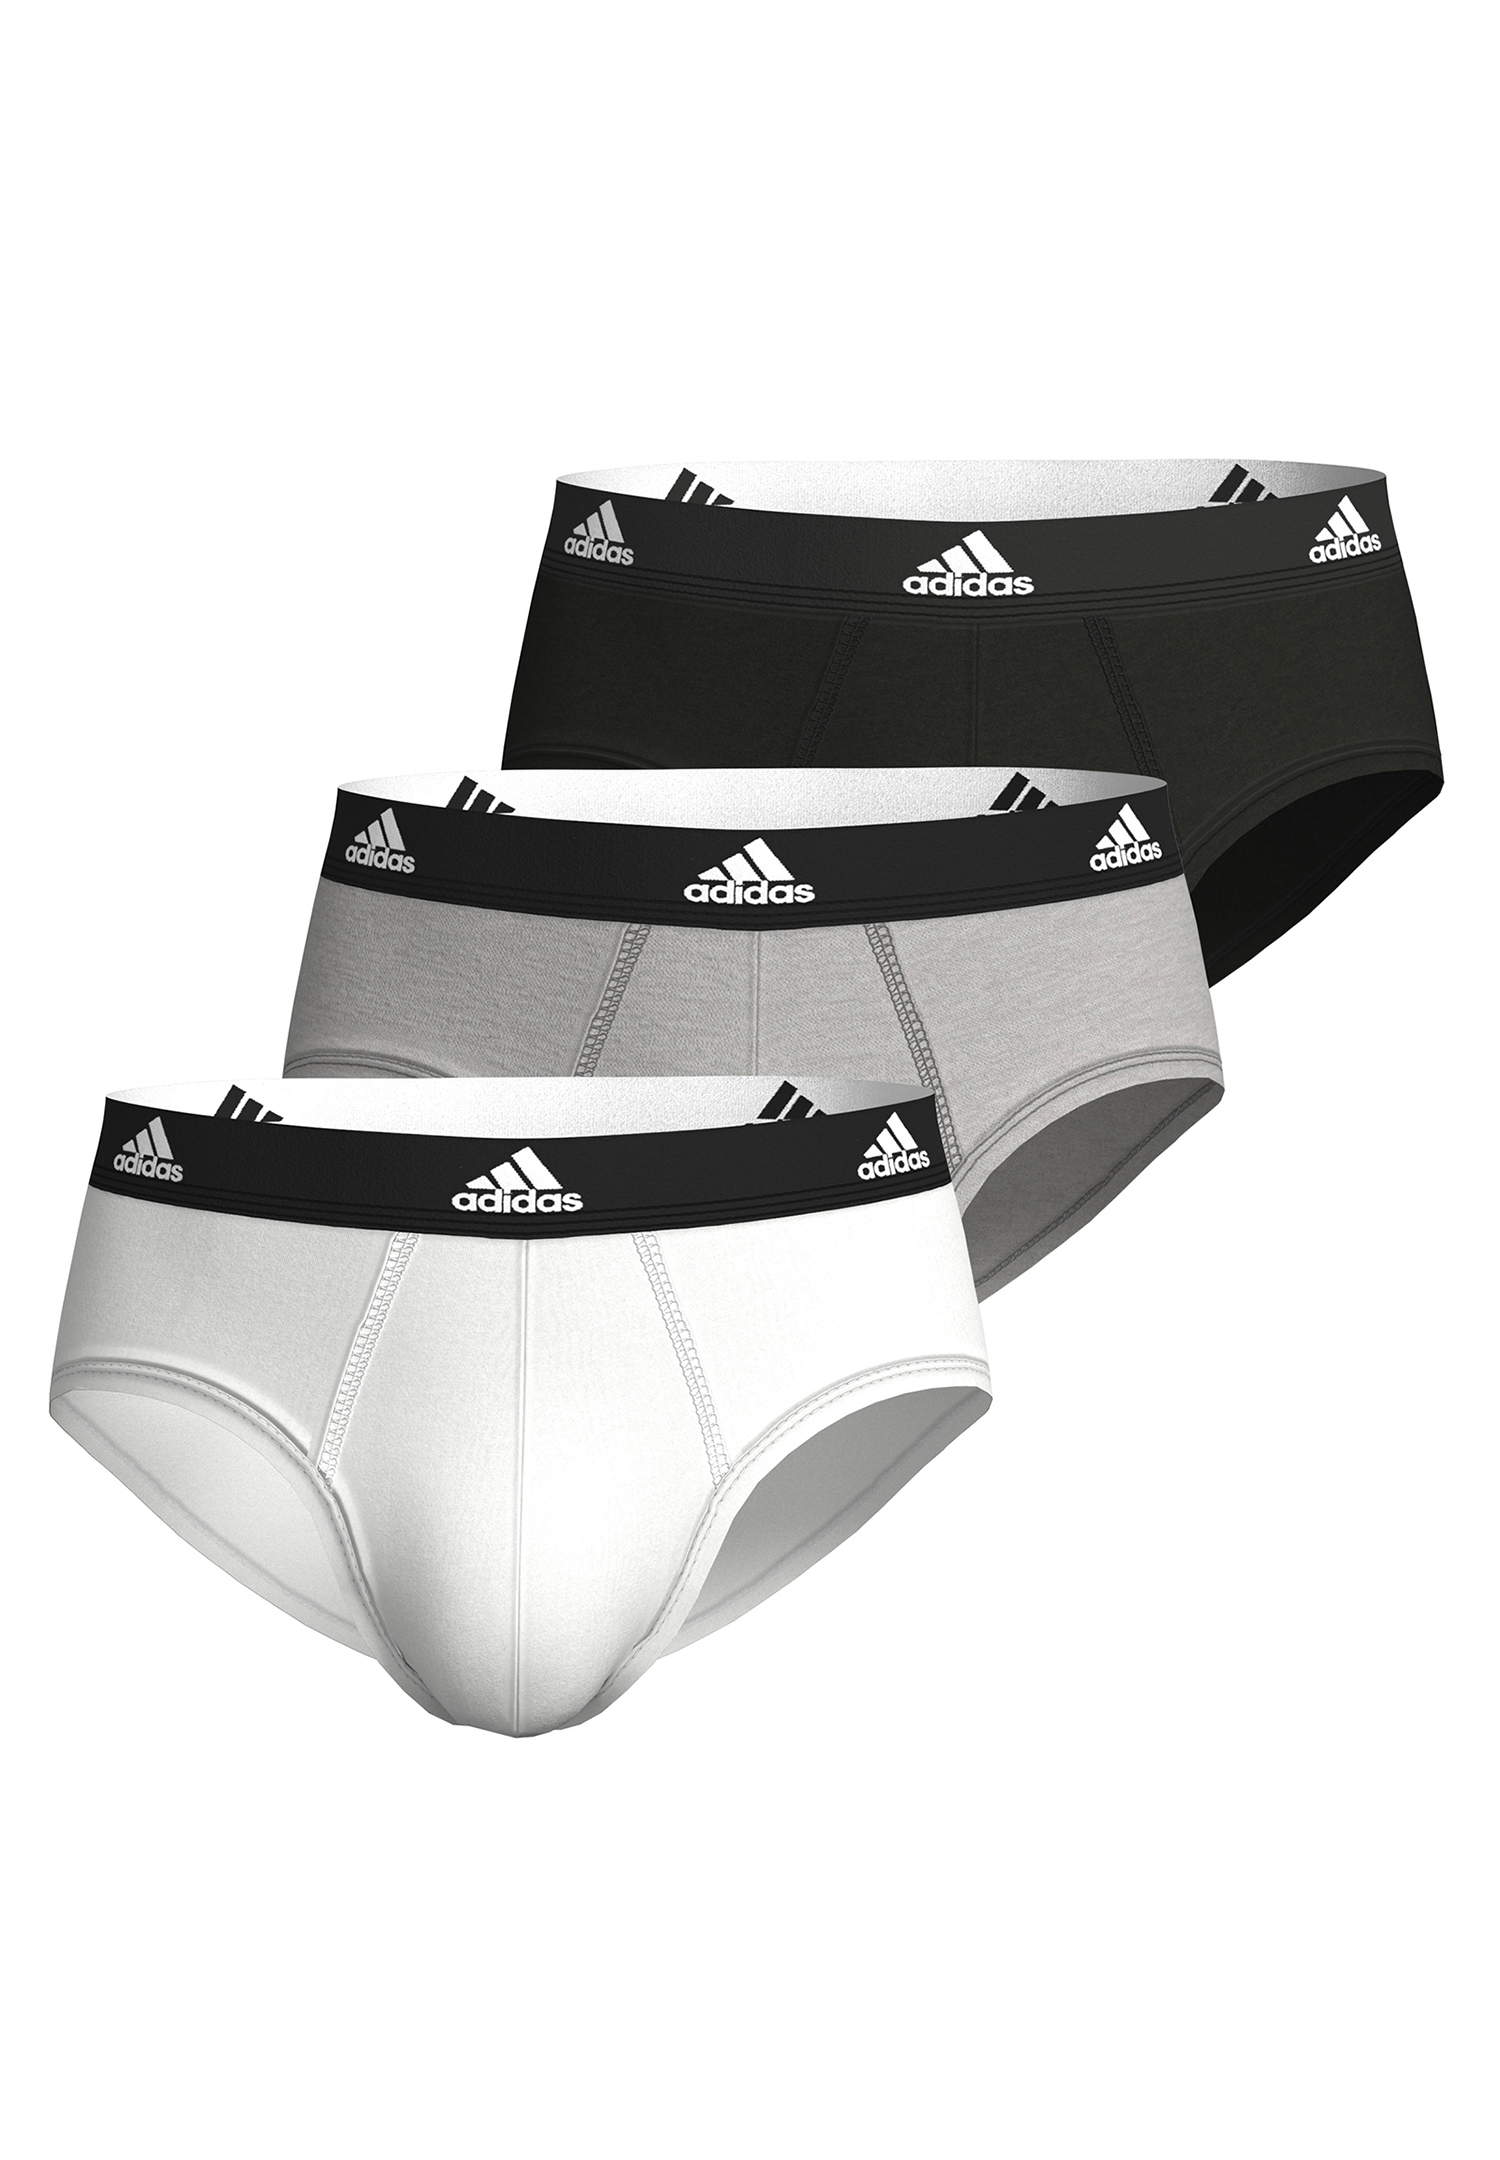 Adidas Herren Basic Brief Slips Unterhose Pant Unterwäsche 3er Pack 